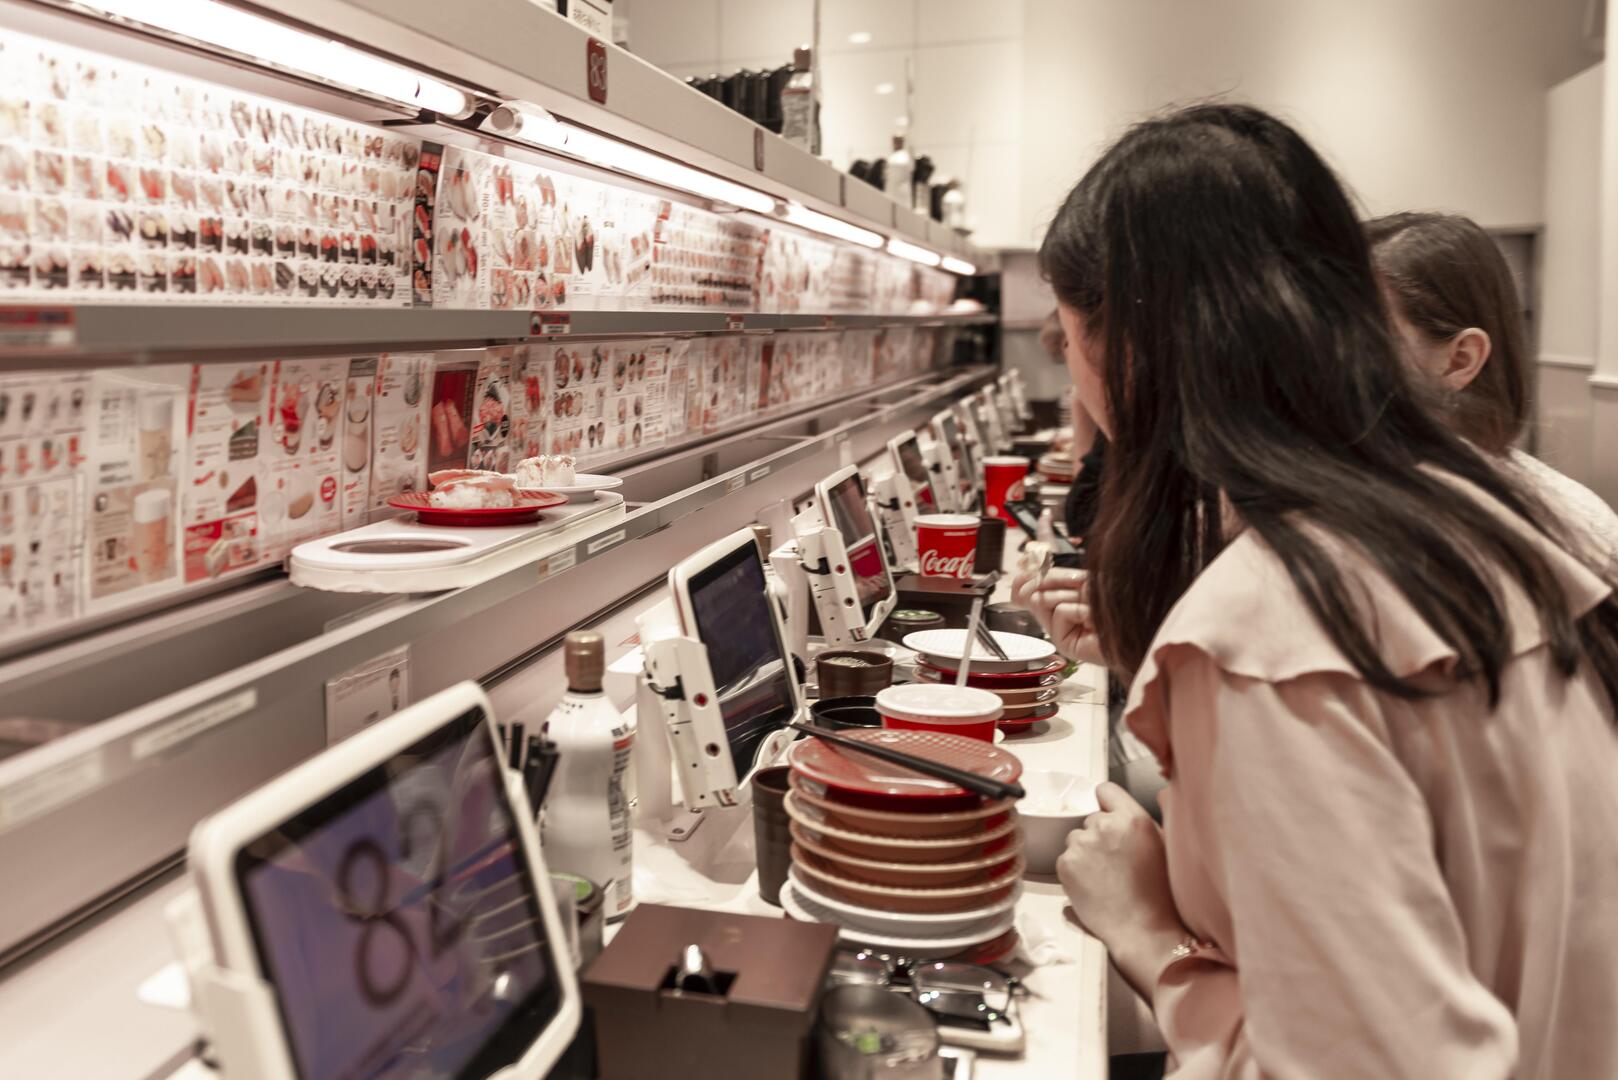 مطعم في اليابان يعمل بنظام الحزام الناقل